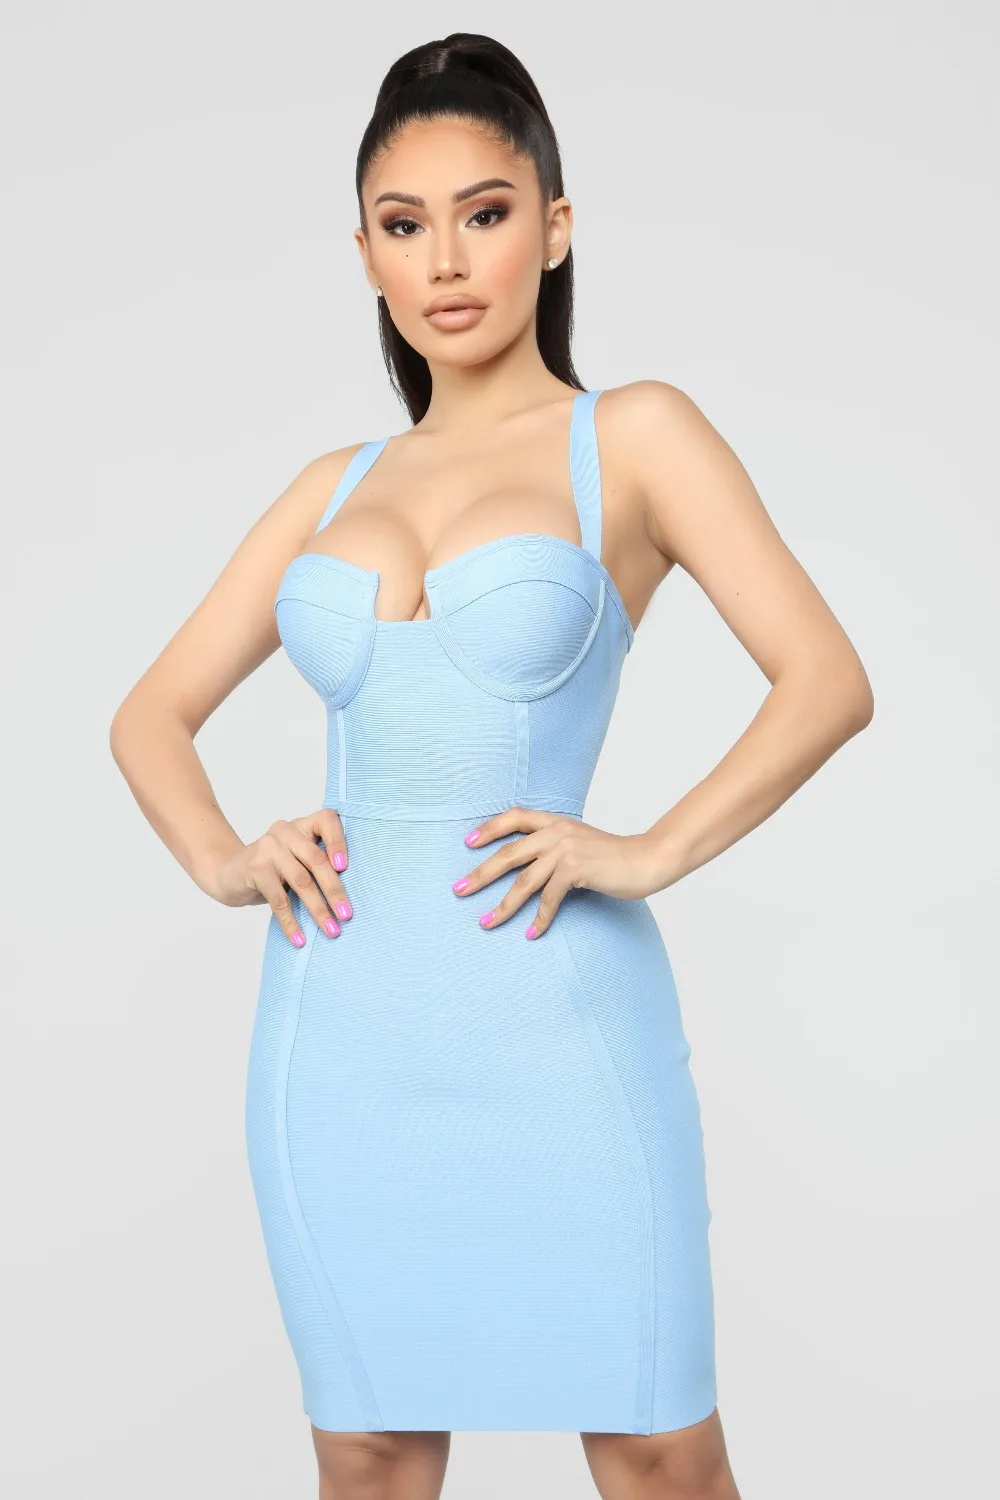 4 цвета летнее платье женское сексуальное голубое ярко-розовое Бандажное платье знаменитостей Мини Вечерние платья Vestido